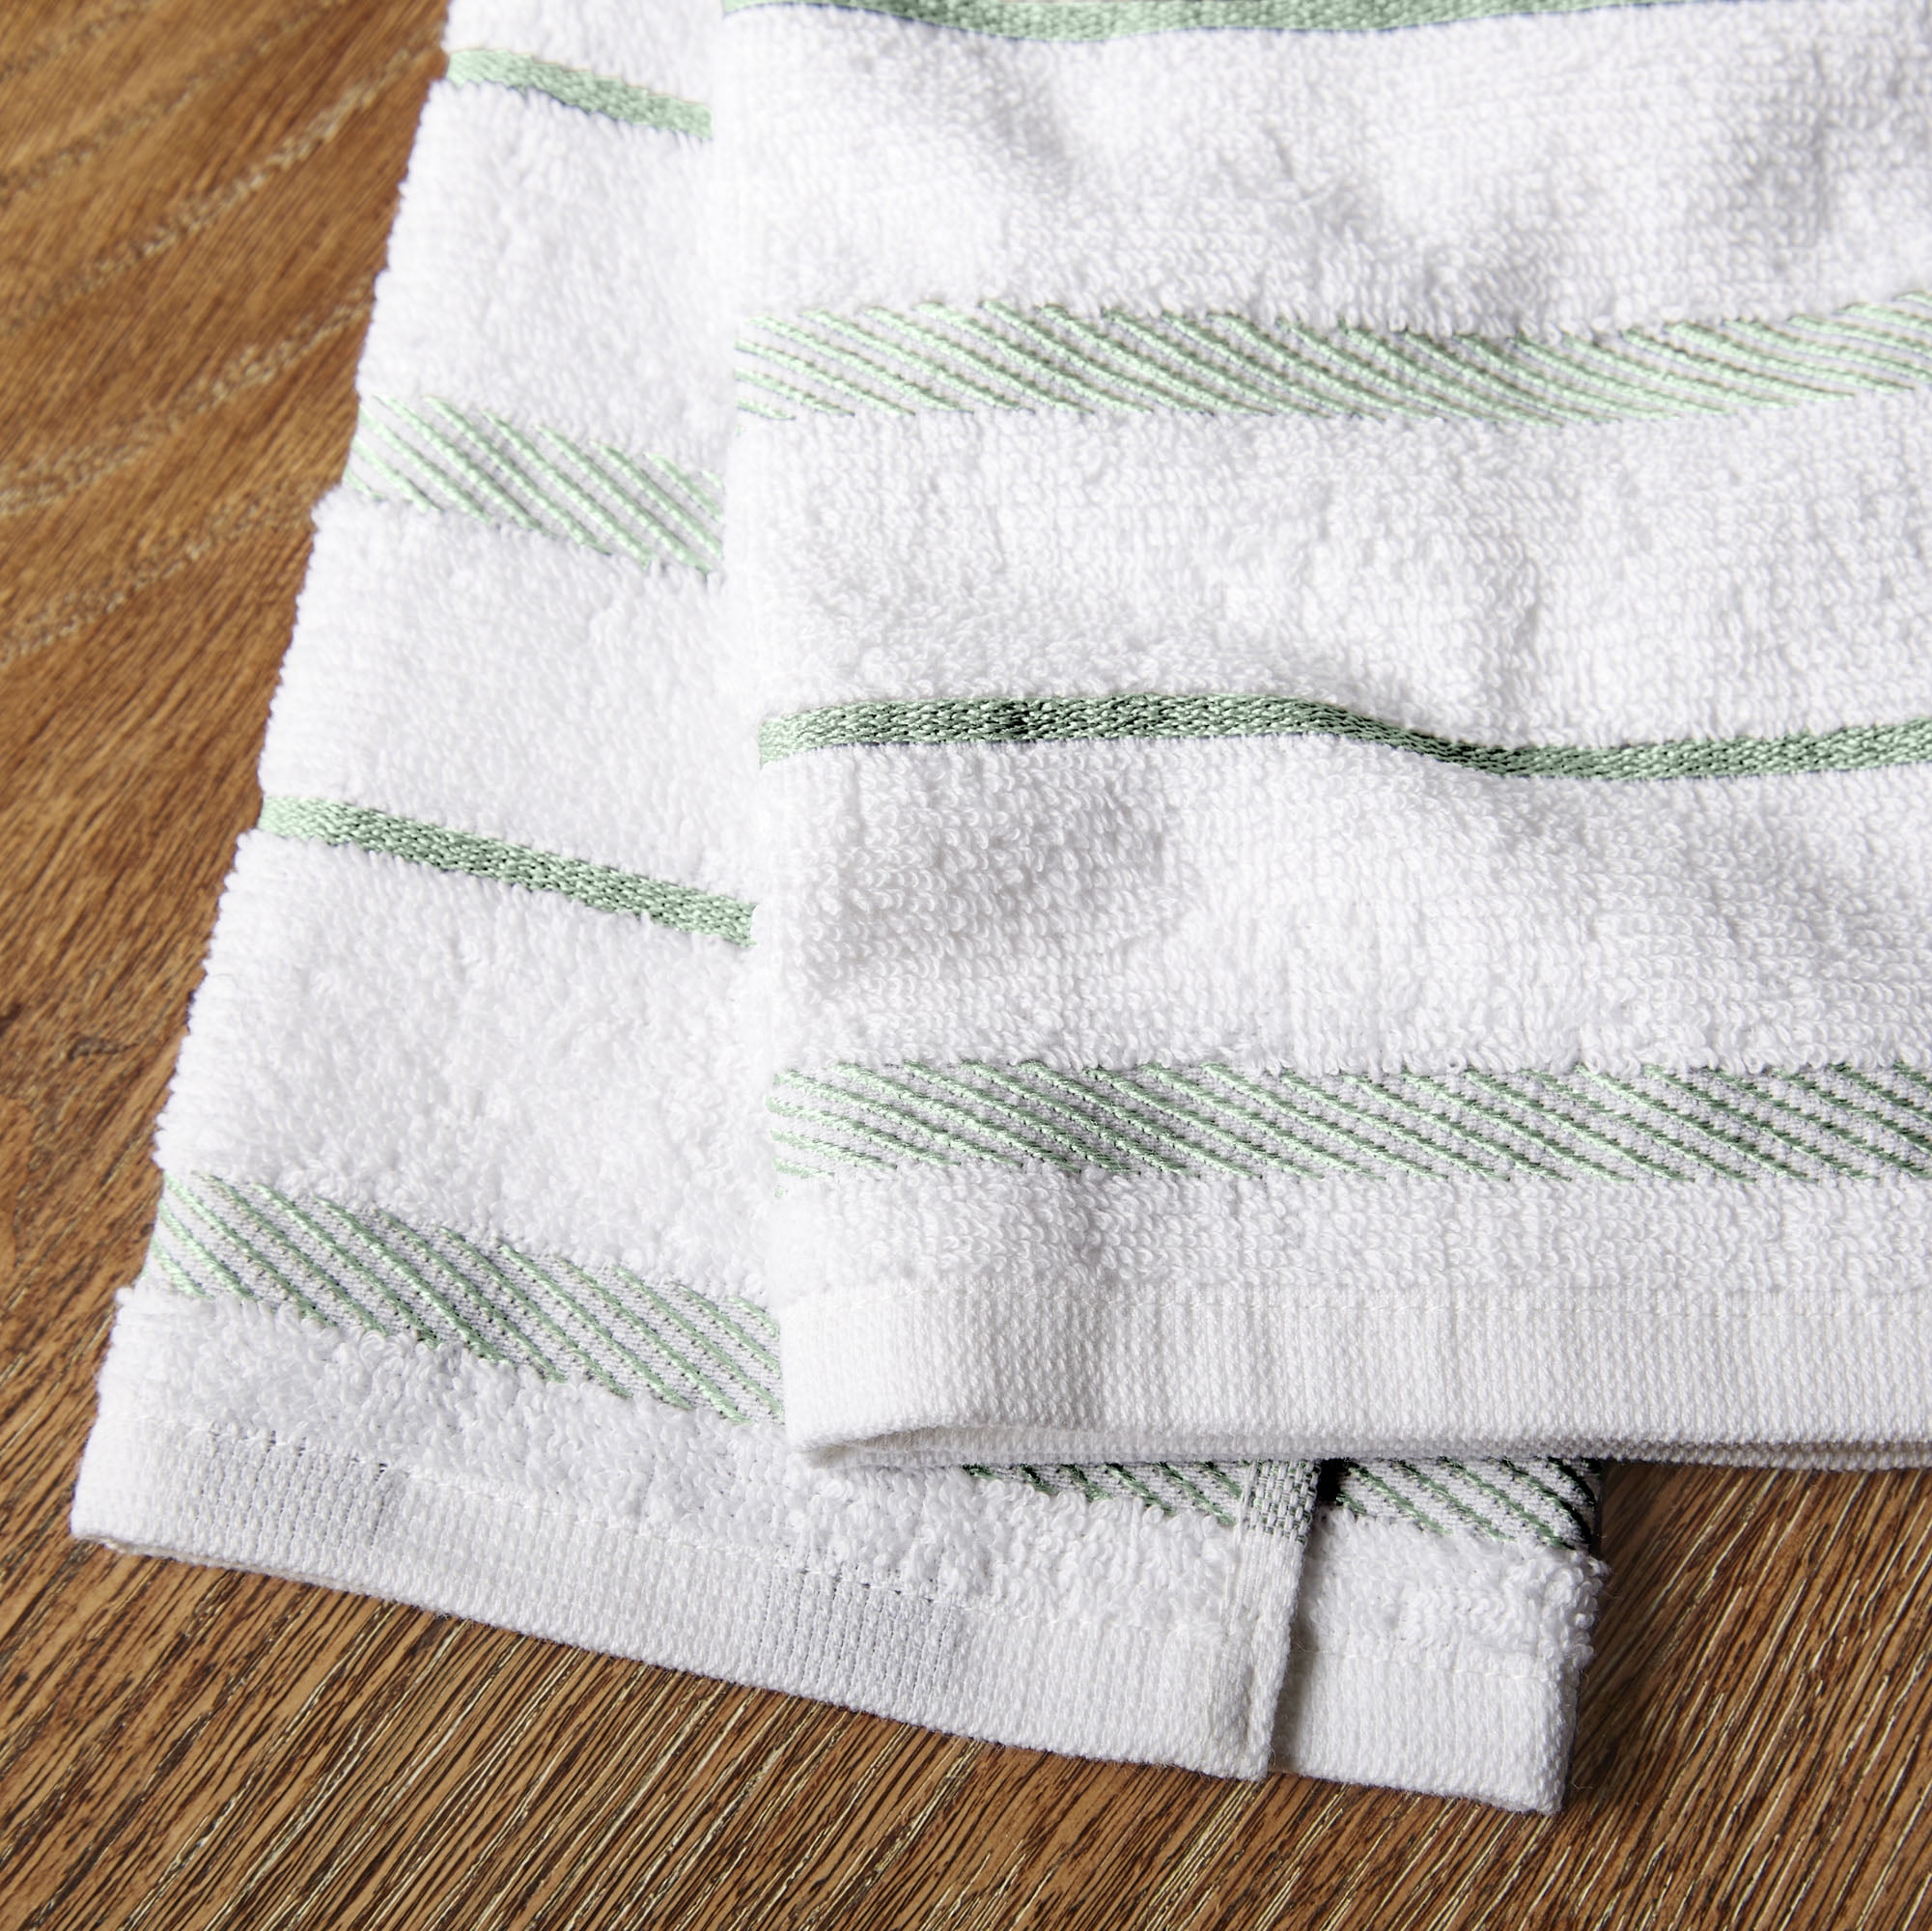 New KitchenAid Tea-Towels x2 Black with White Squares – Wild